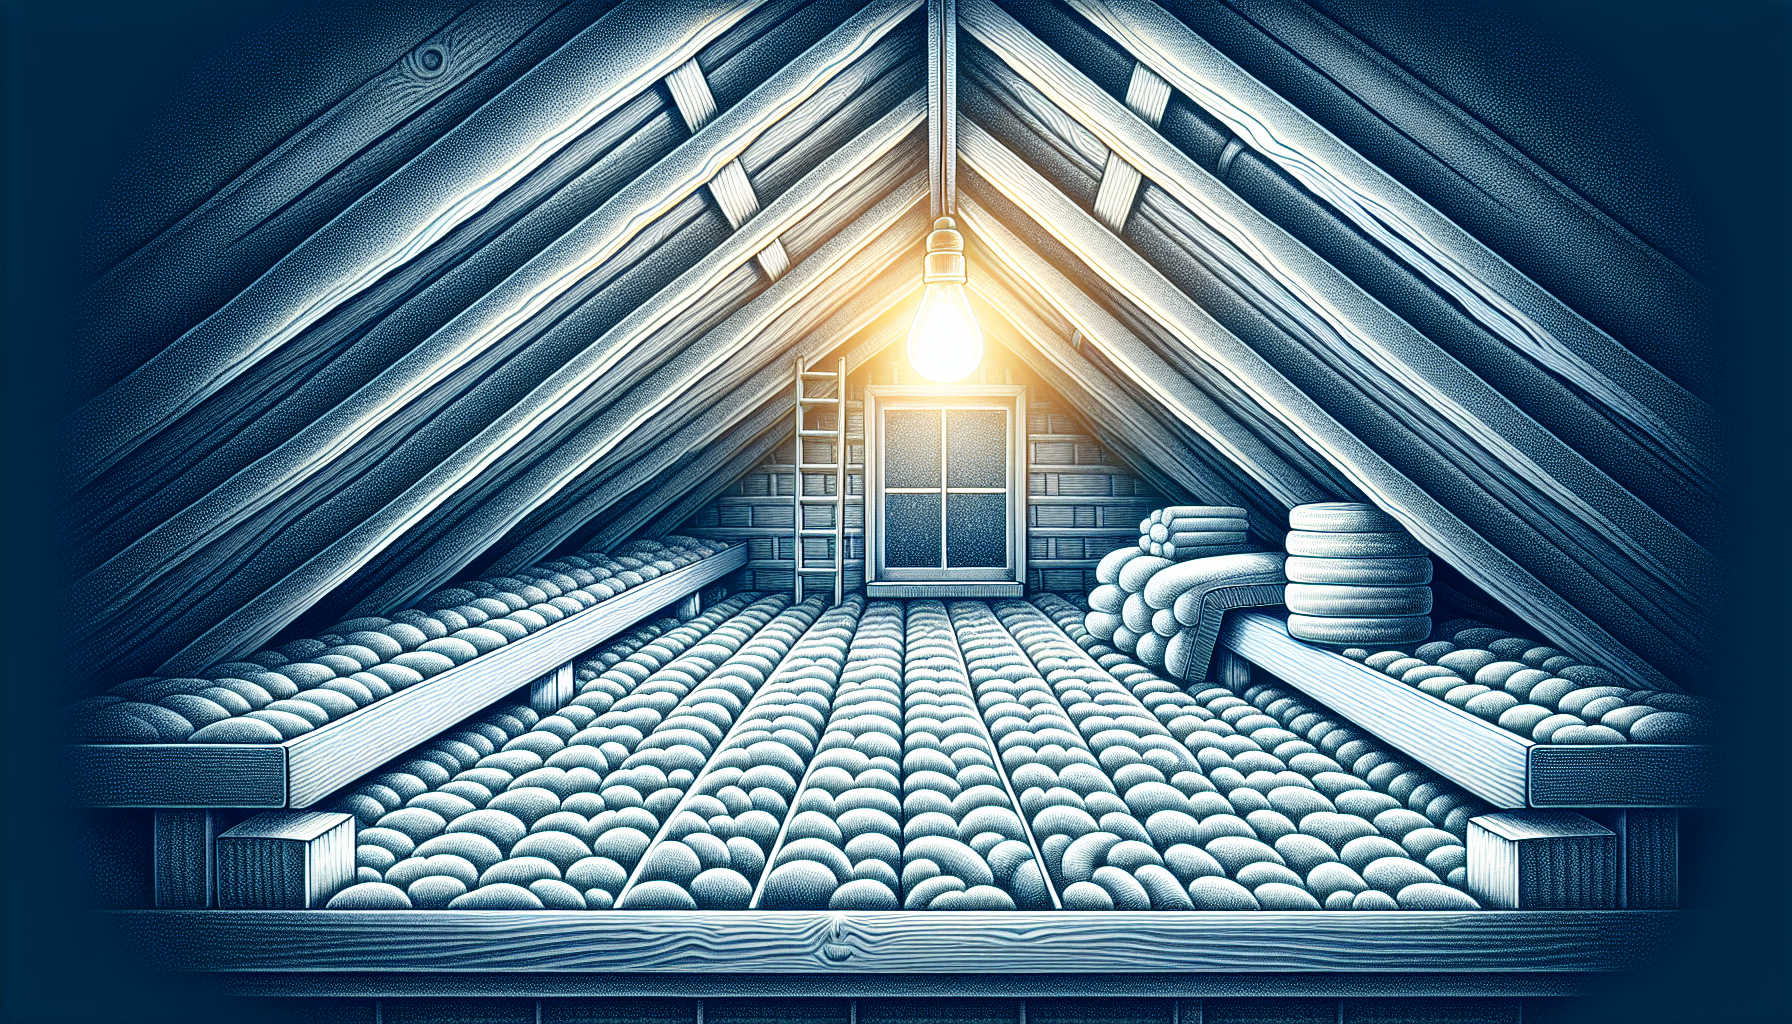 Illustration von einem Dachboden mit Dämmung